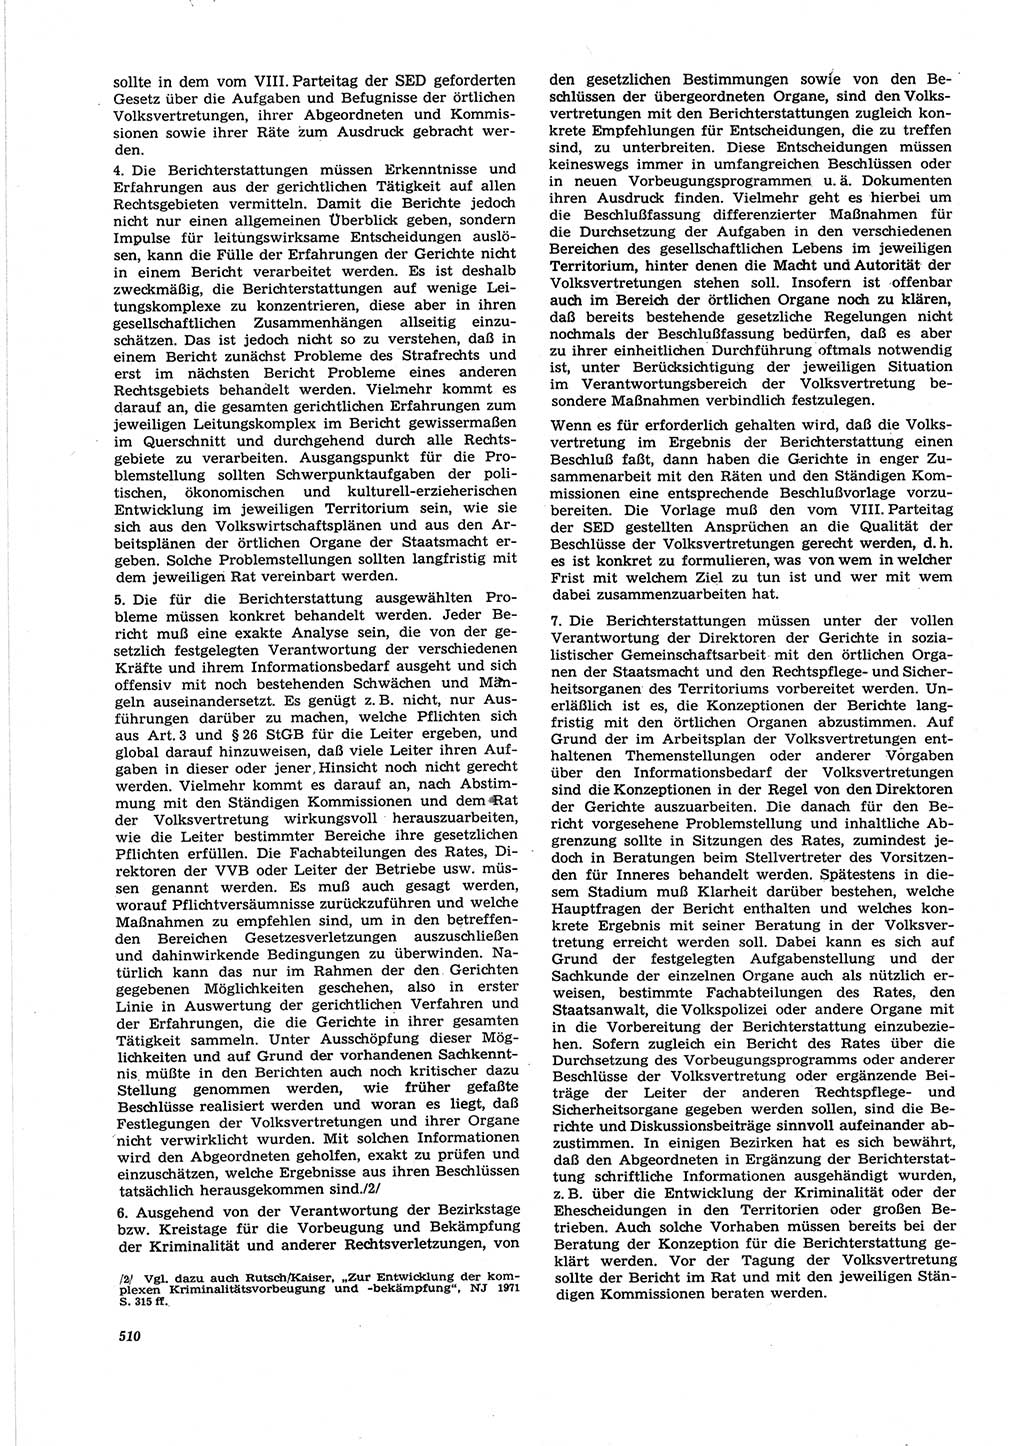 Neue Justiz (NJ), Zeitschrift für Recht und Rechtswissenschaft [Deutsche Demokratische Republik (DDR)], 25. Jahrgang 1971, Seite 510 (NJ DDR 1971, S. 510)